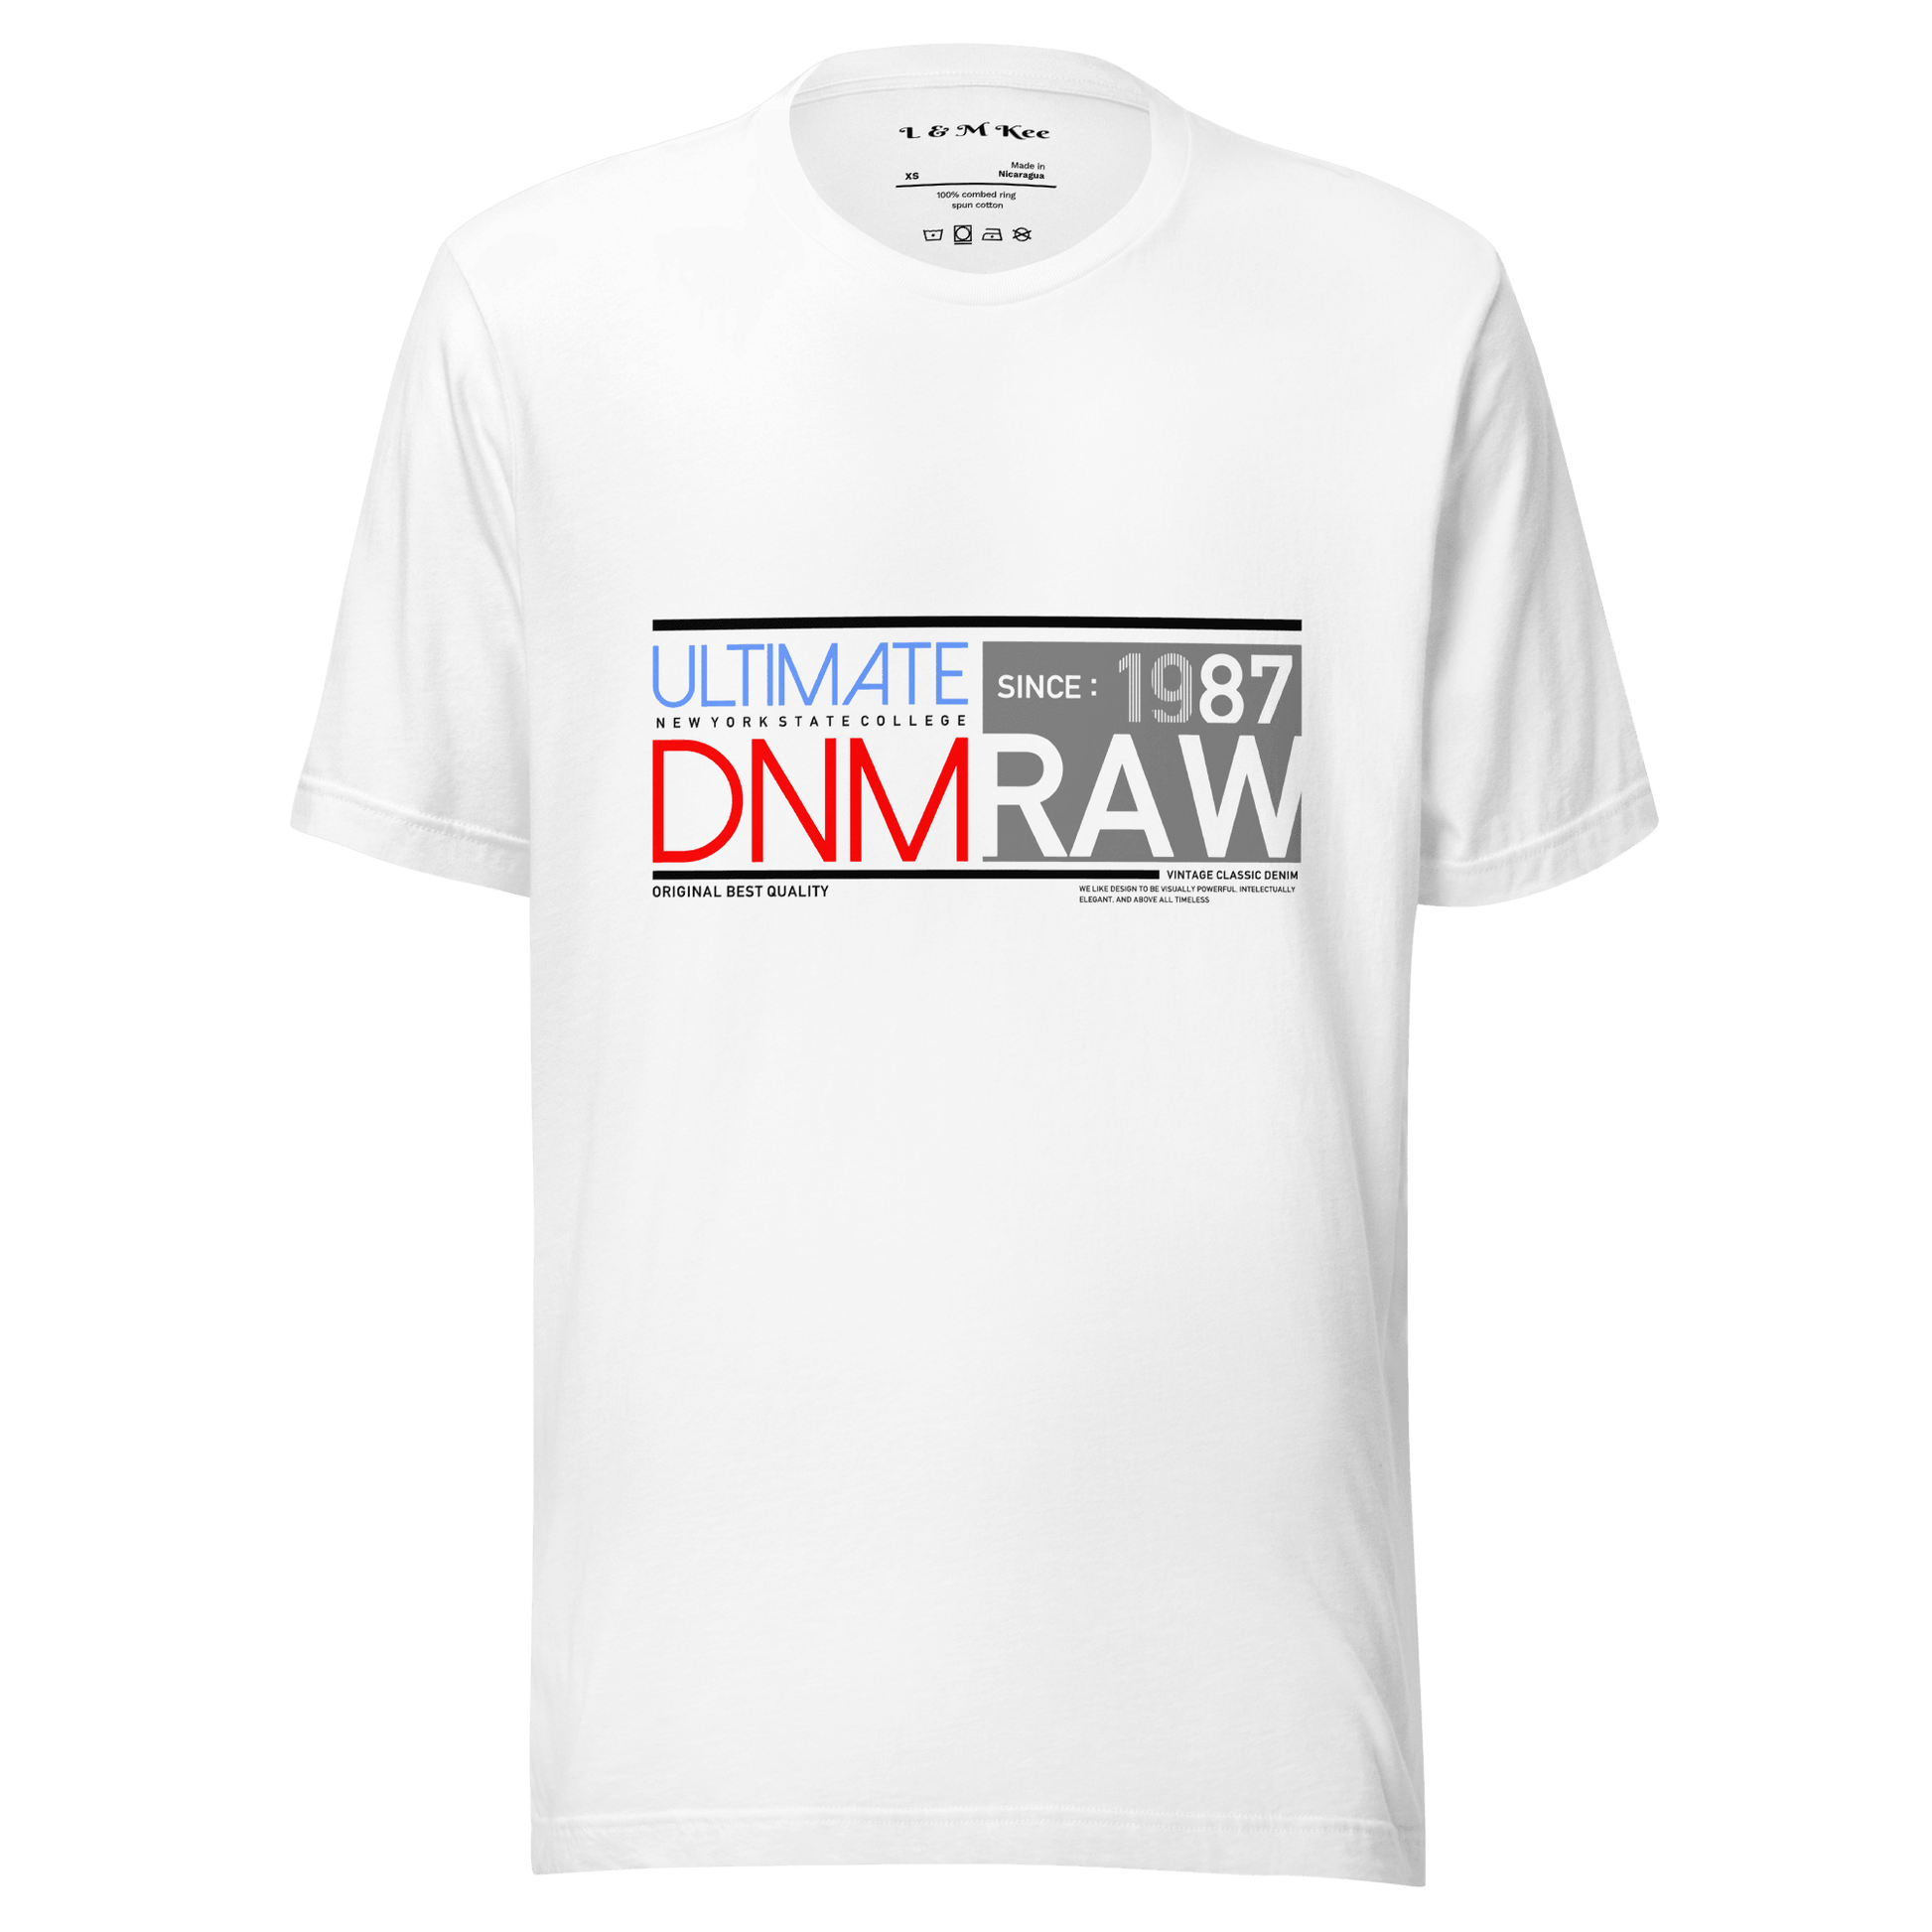 DNM Raw Streetwear Unisex t-shirt - L & M Kee, LLC